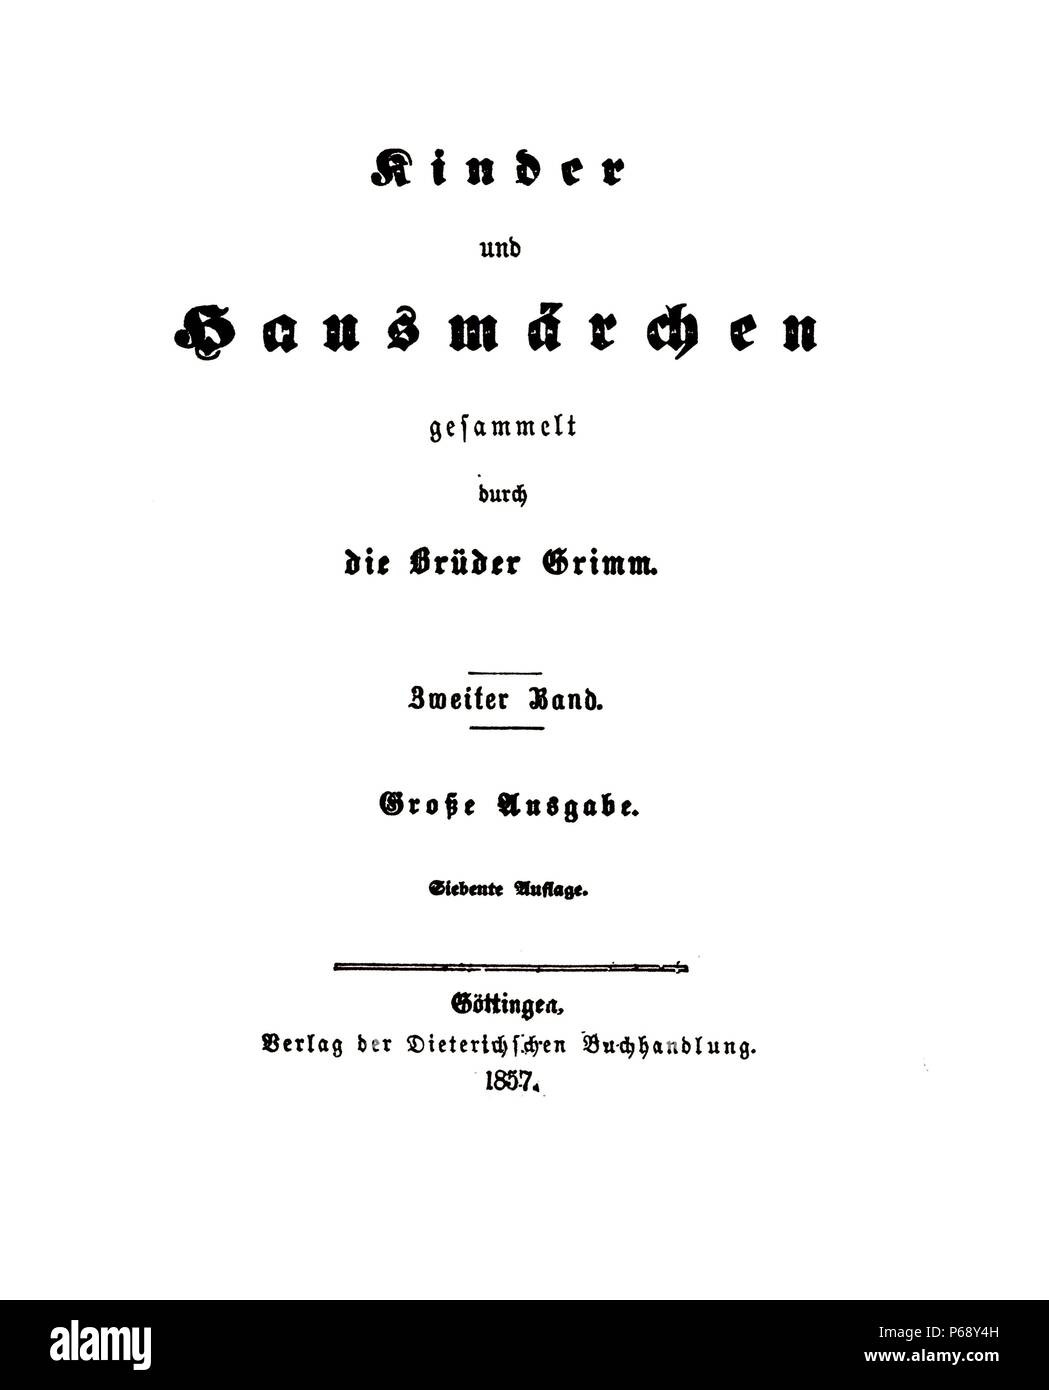 Secolo XIX edizione dei fratelli Grimm racconti popolari, bambini e racconti di uso domestico. Pubblicato nel 1812. Datata 1857 Foto Stock